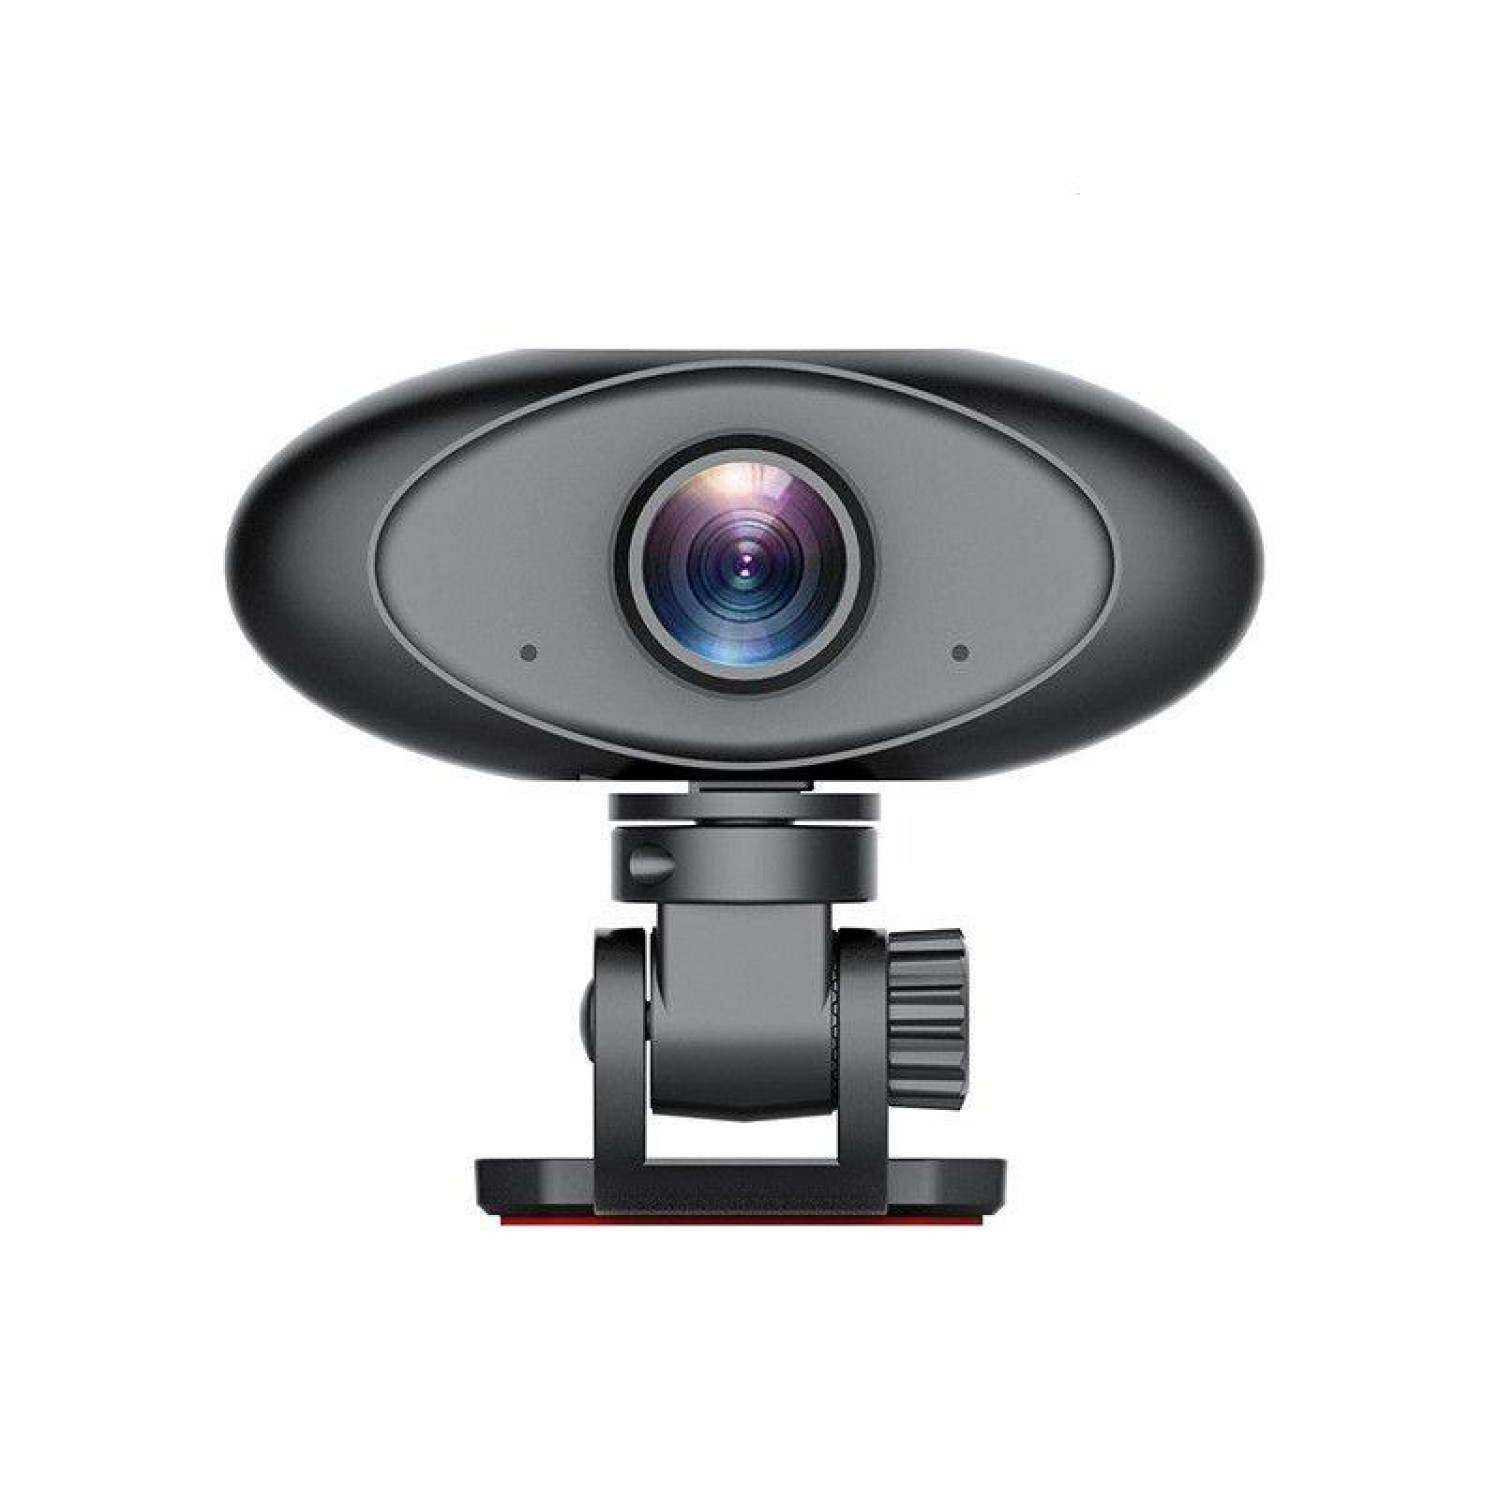 Уеб камера Spire CG-ASK-WL-012, микрофон, HD 720P, Черна